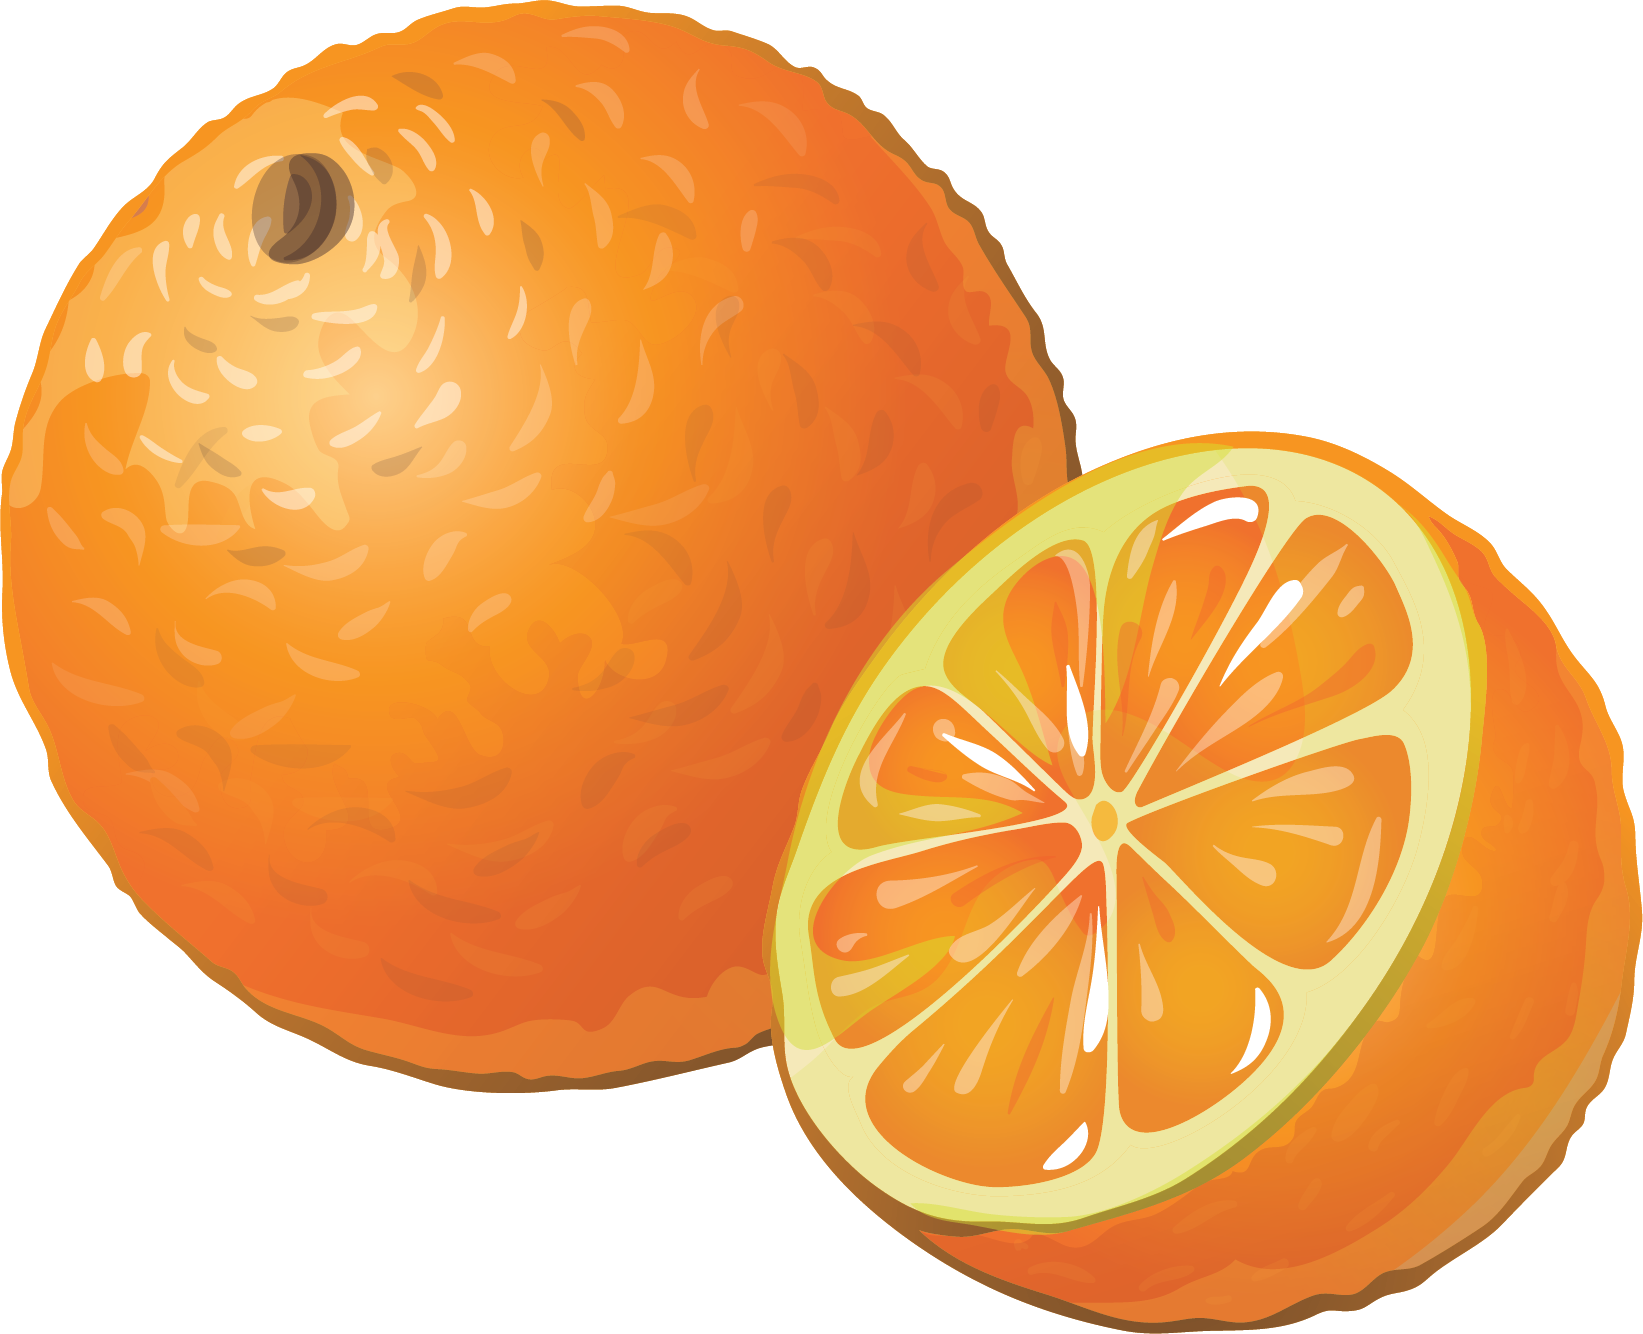 Orange Fruit PNG Image